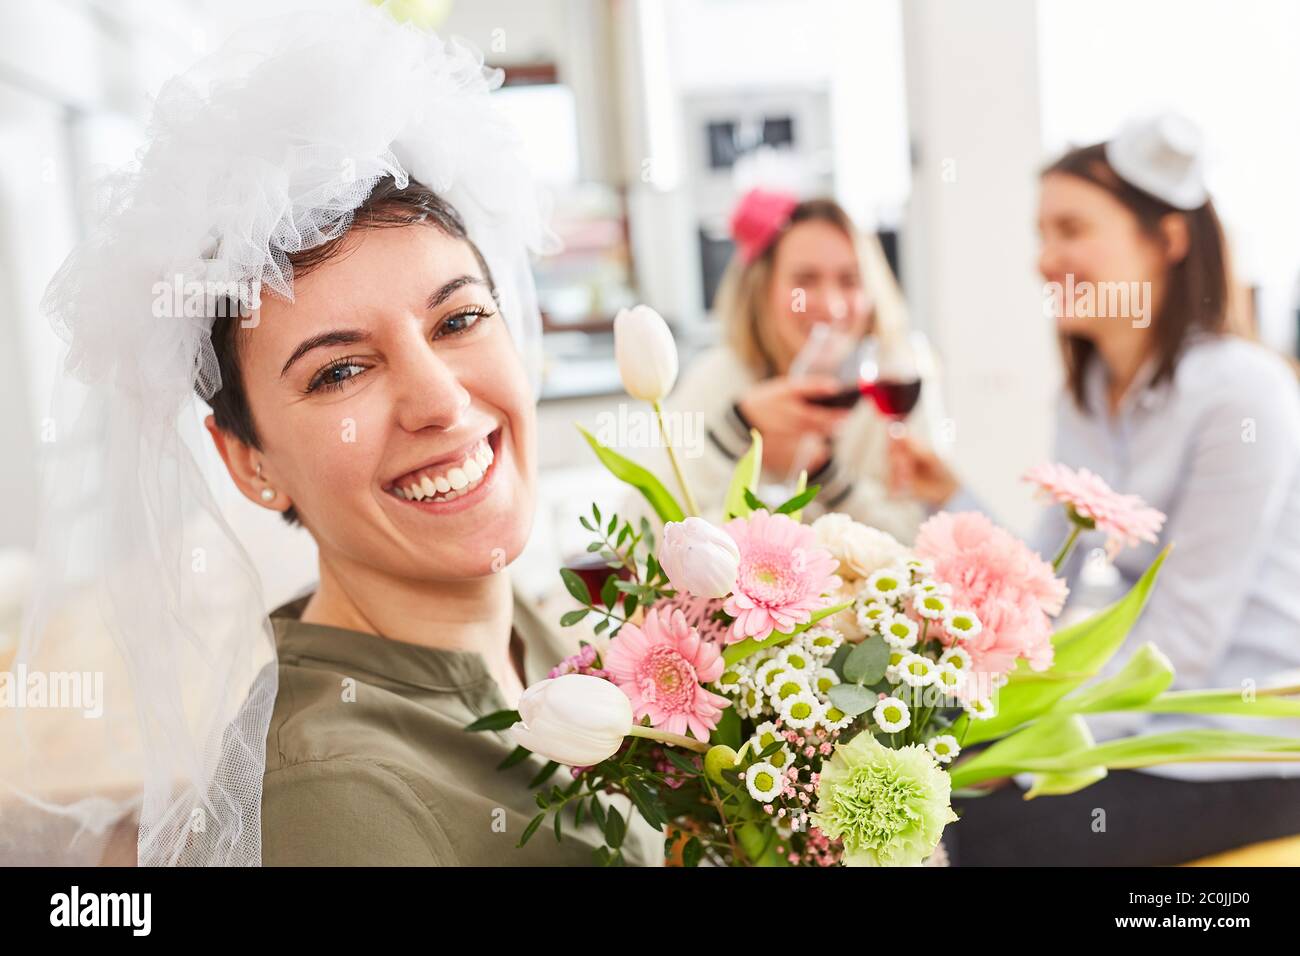 Glückliche Braut mit Brautschleier und Brautstrauß feiert die Hochzeit mit Freunden Stockfoto